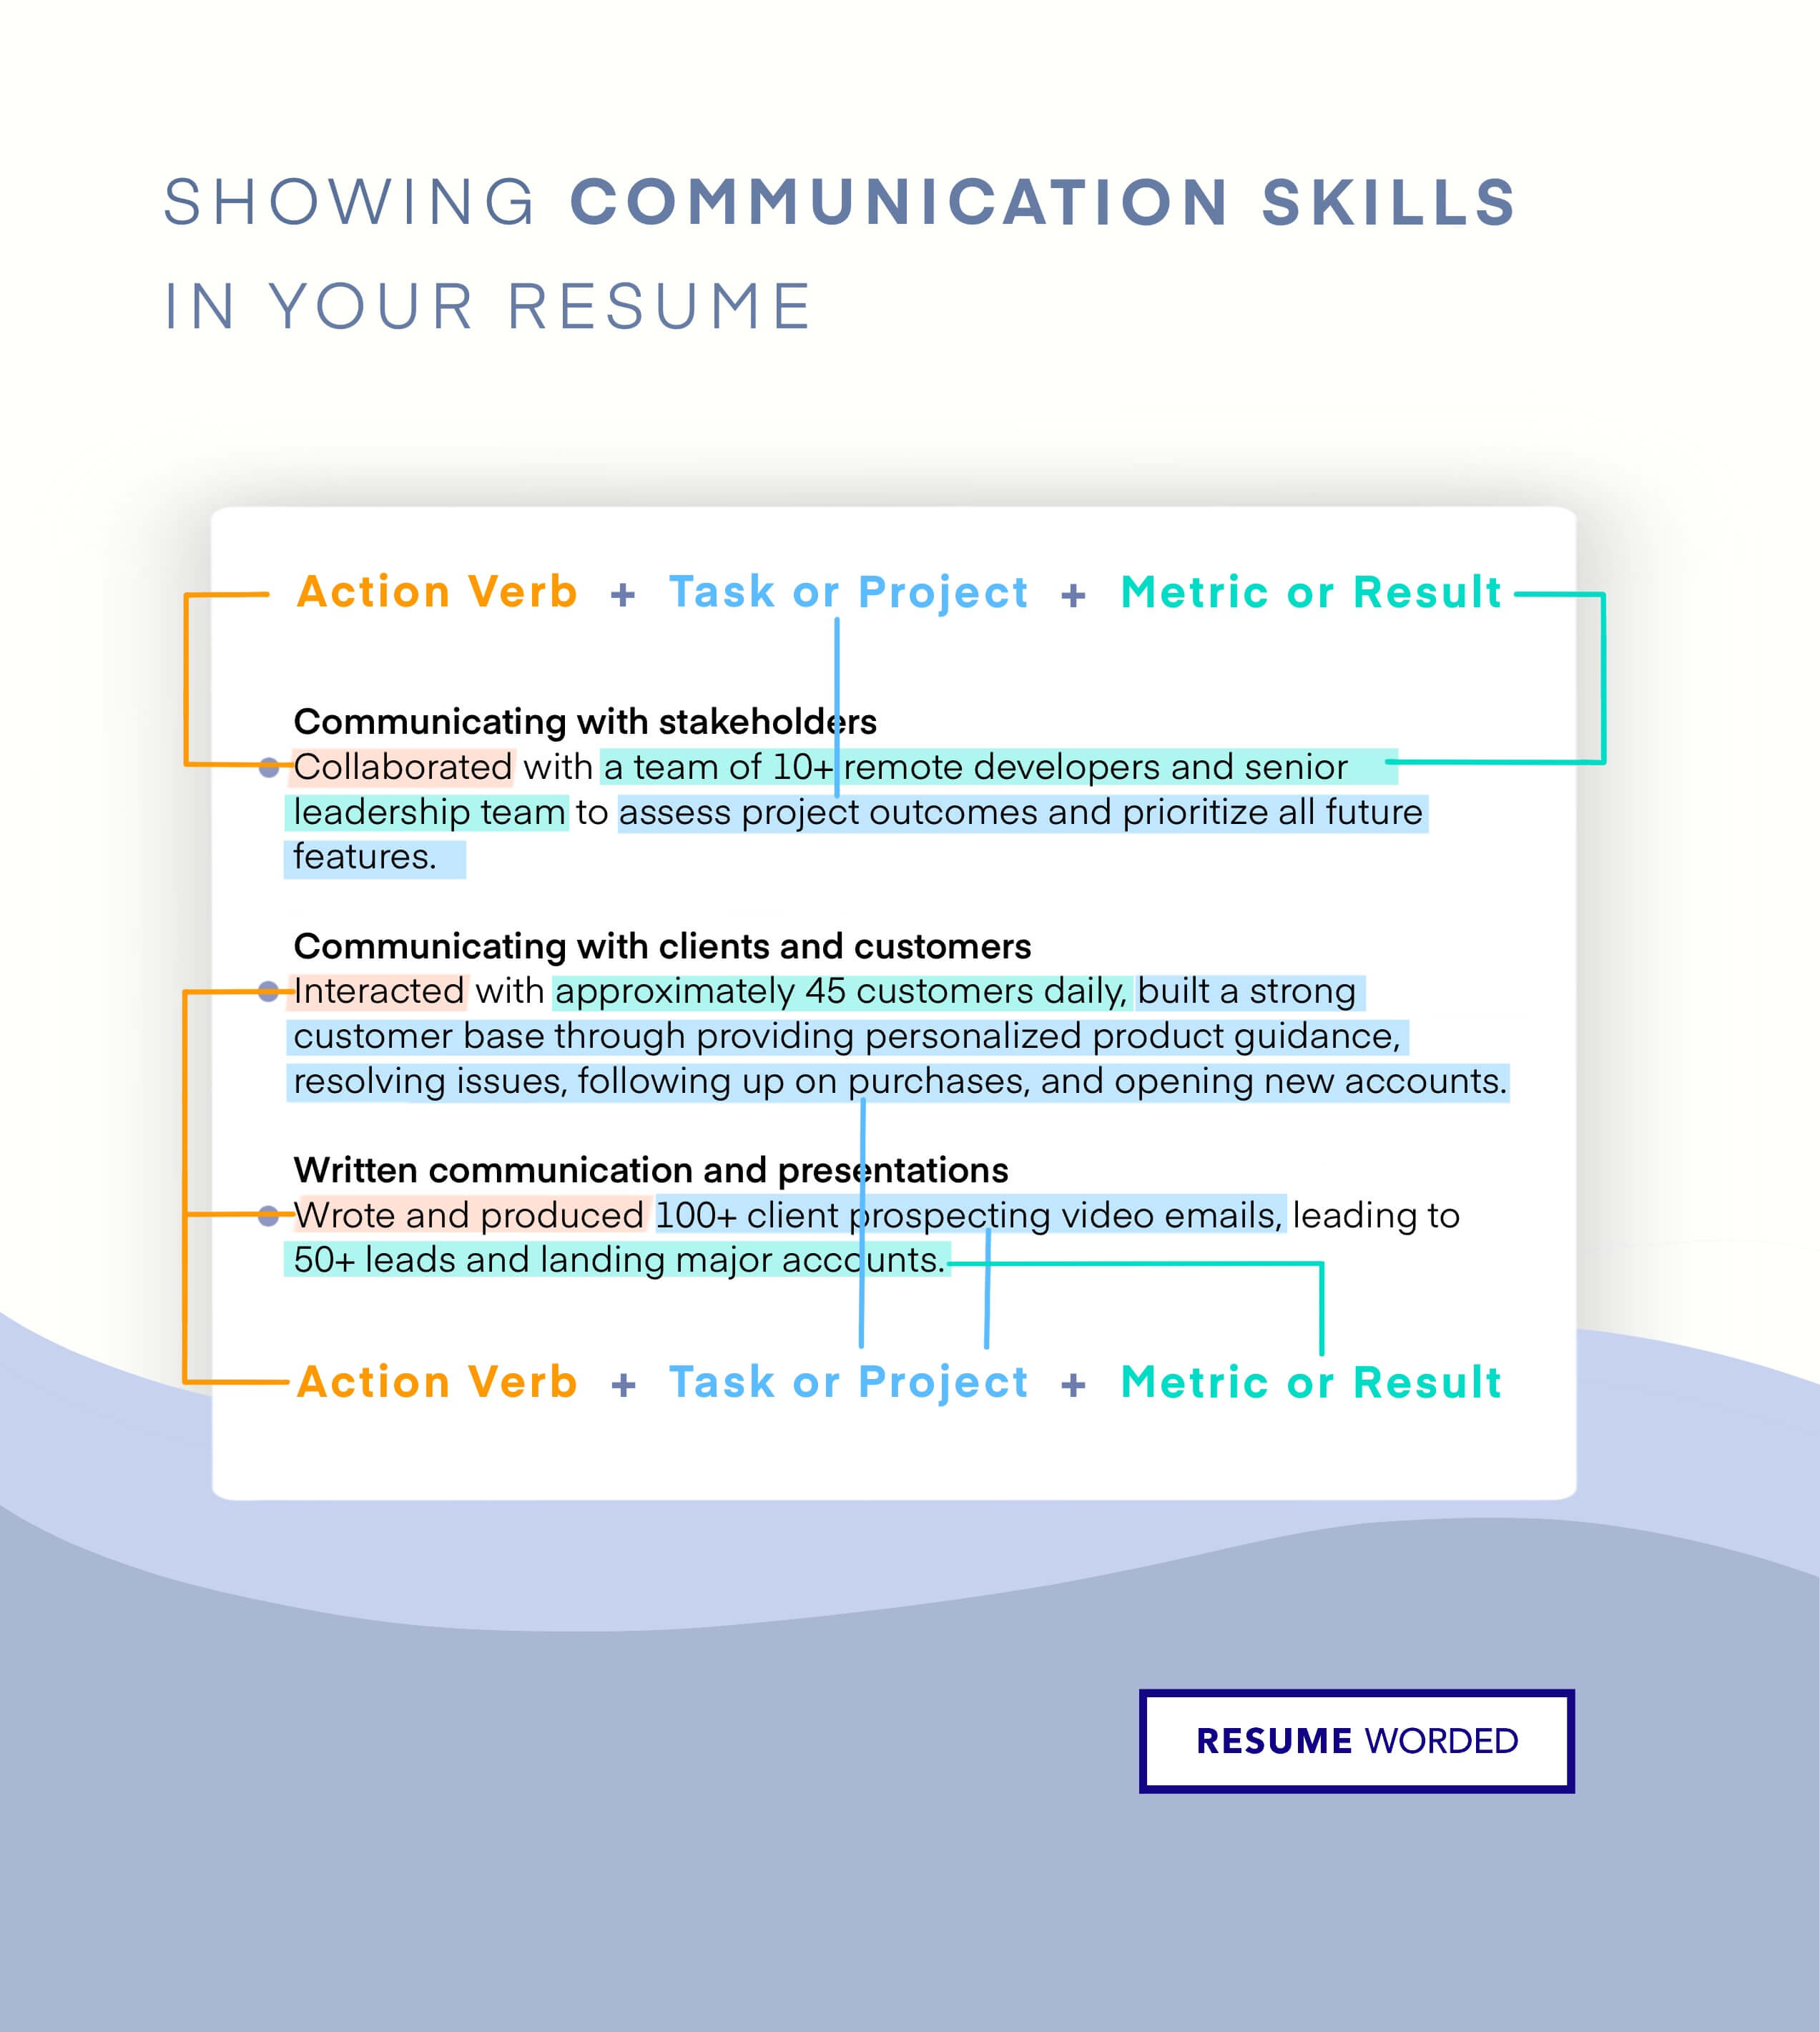 Demonstrate your communication skills. - Packaging Sales Engineer Resume